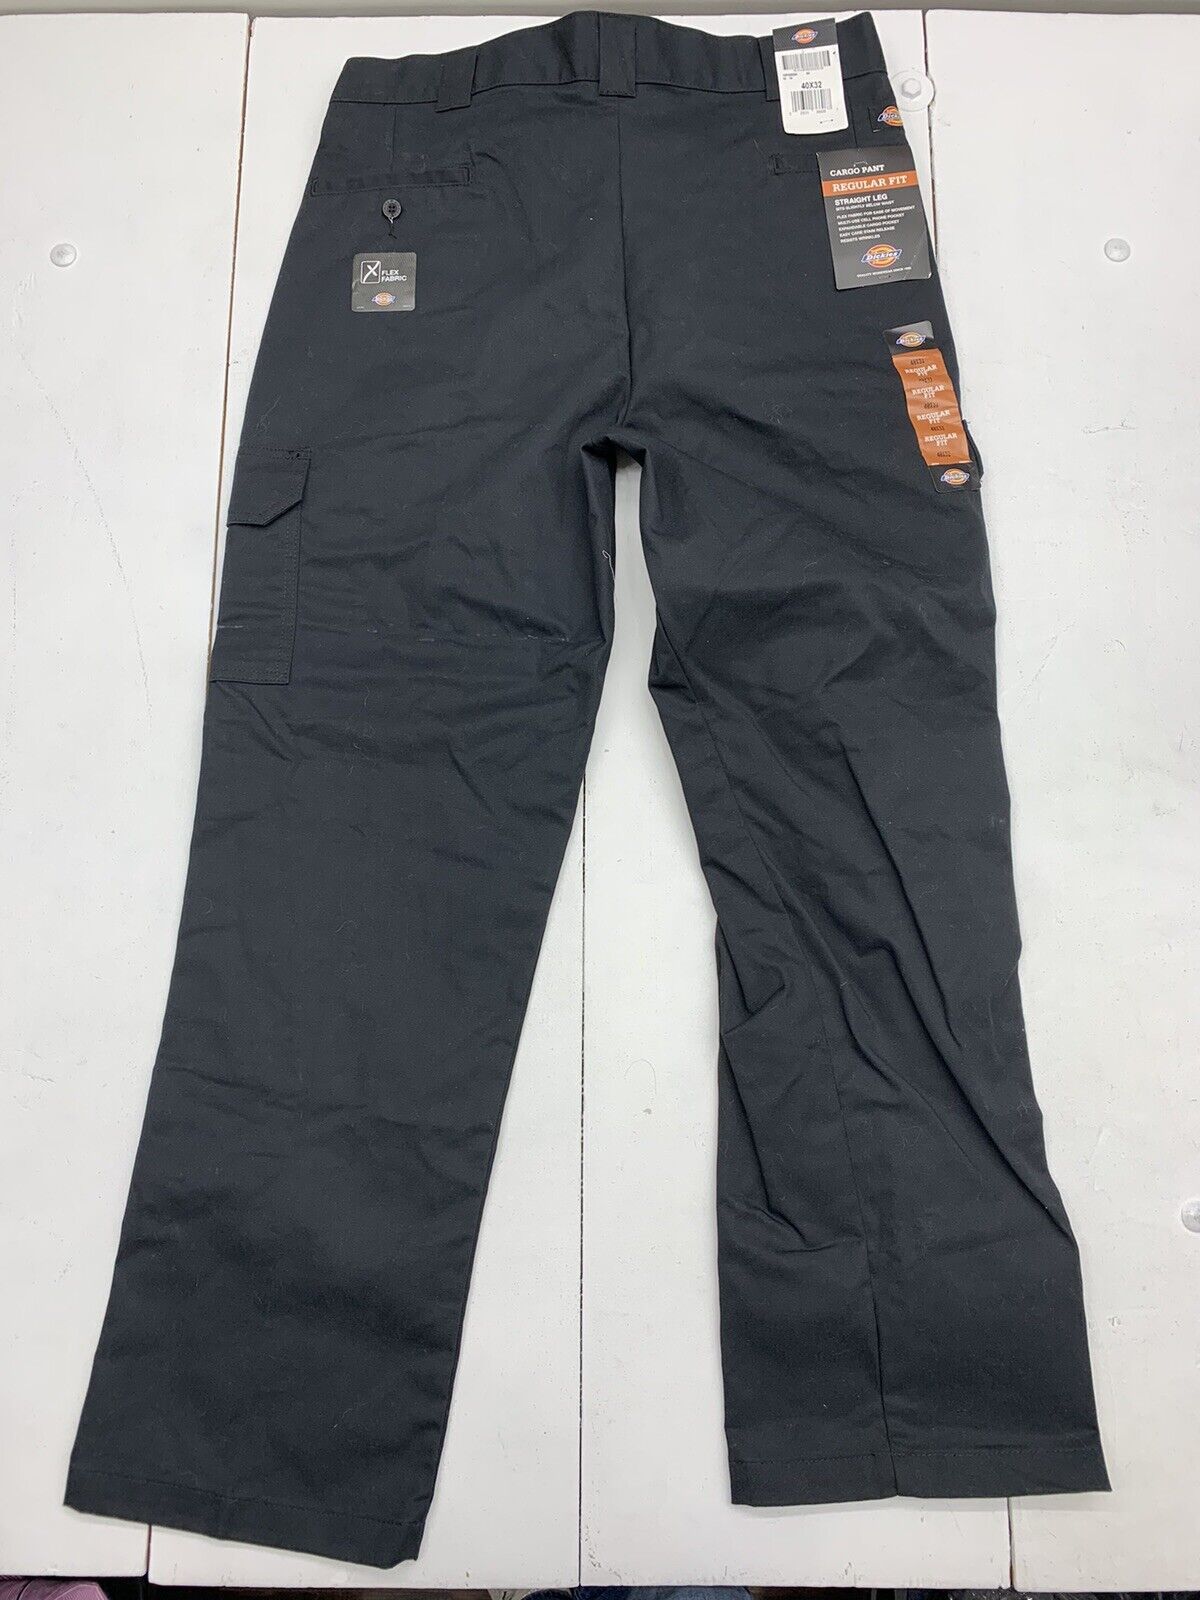 Dickies Flex Cargo pants 32x34, worn in, no... - Depop